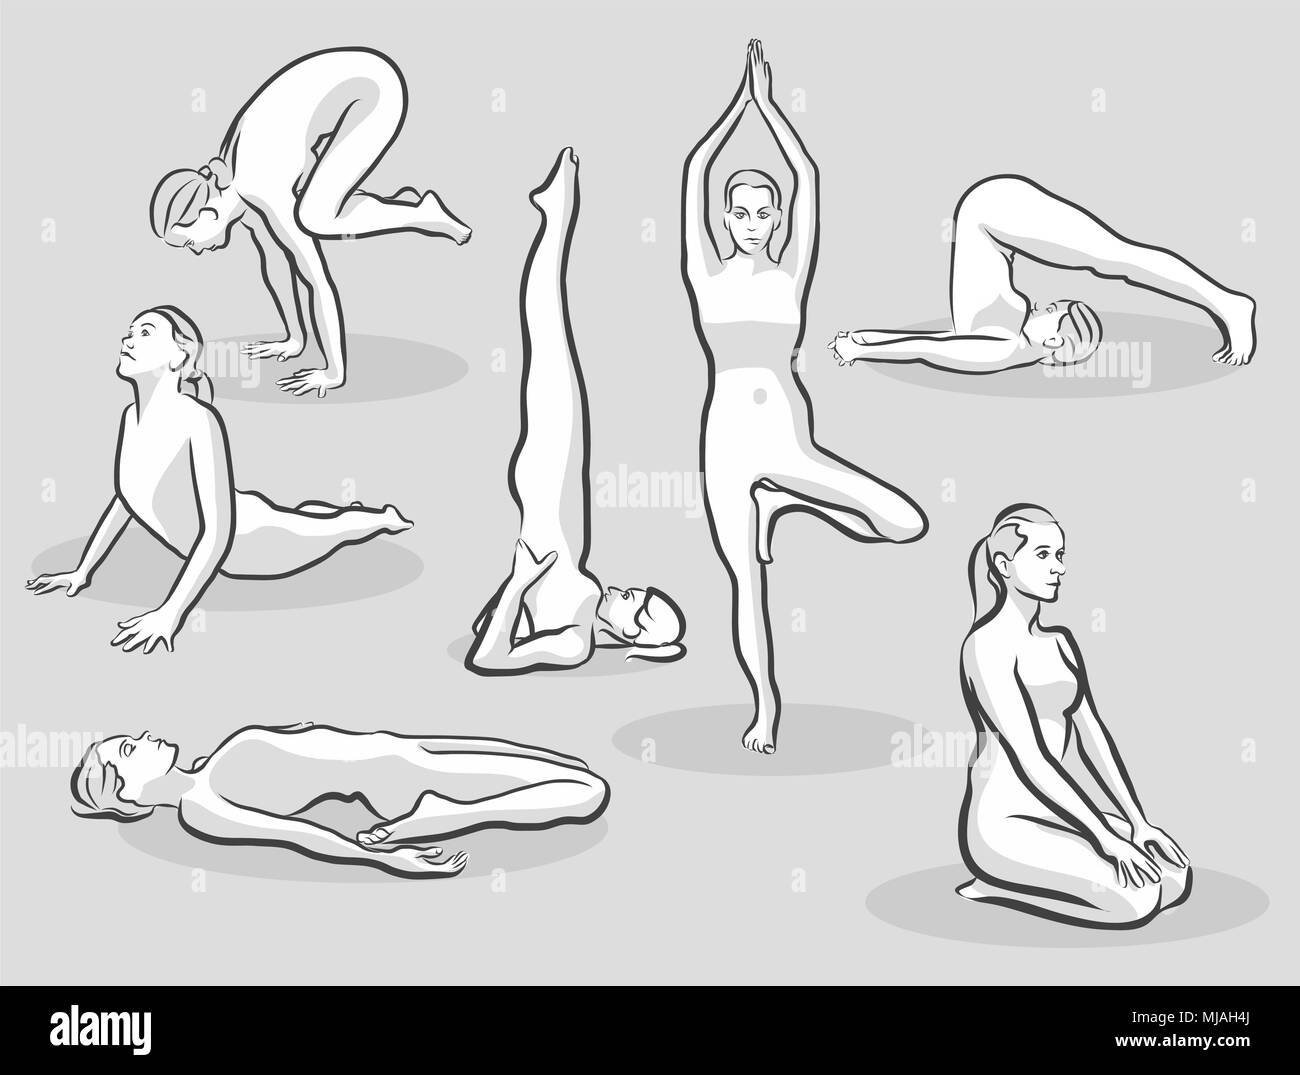 Sept Demi-teintes différentes postures de yoga, Hand drawn vector croquis de demi-teinte Illustration de Vecteur